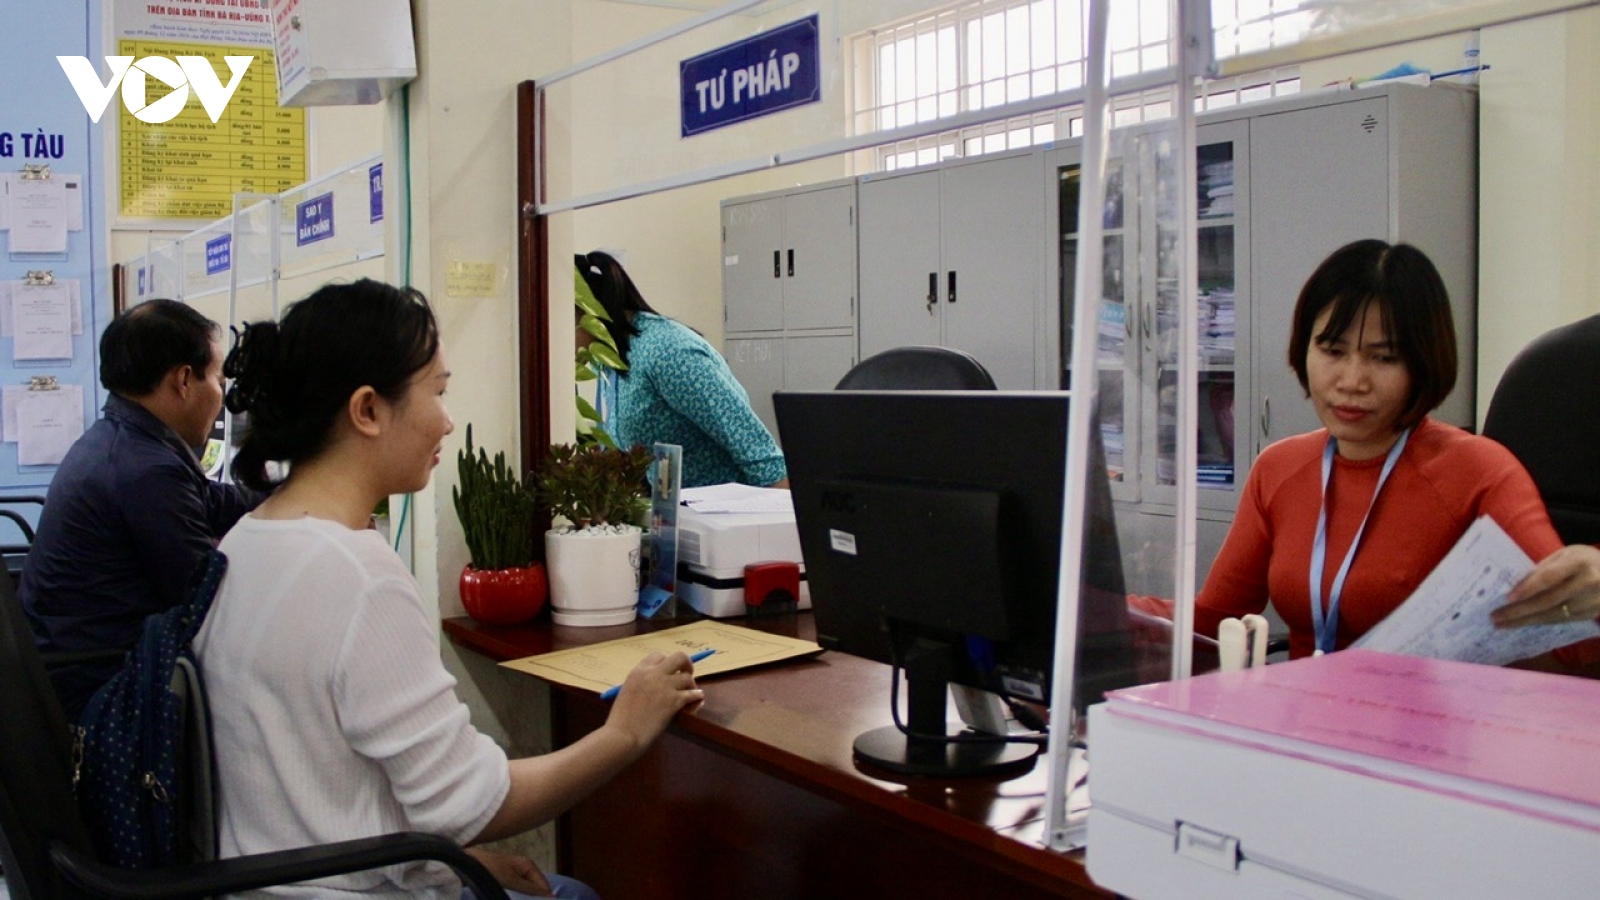 Nhiều doanh nghiệp ở Bà Rịa – Vũng Tàu cần tuyển lao động mới